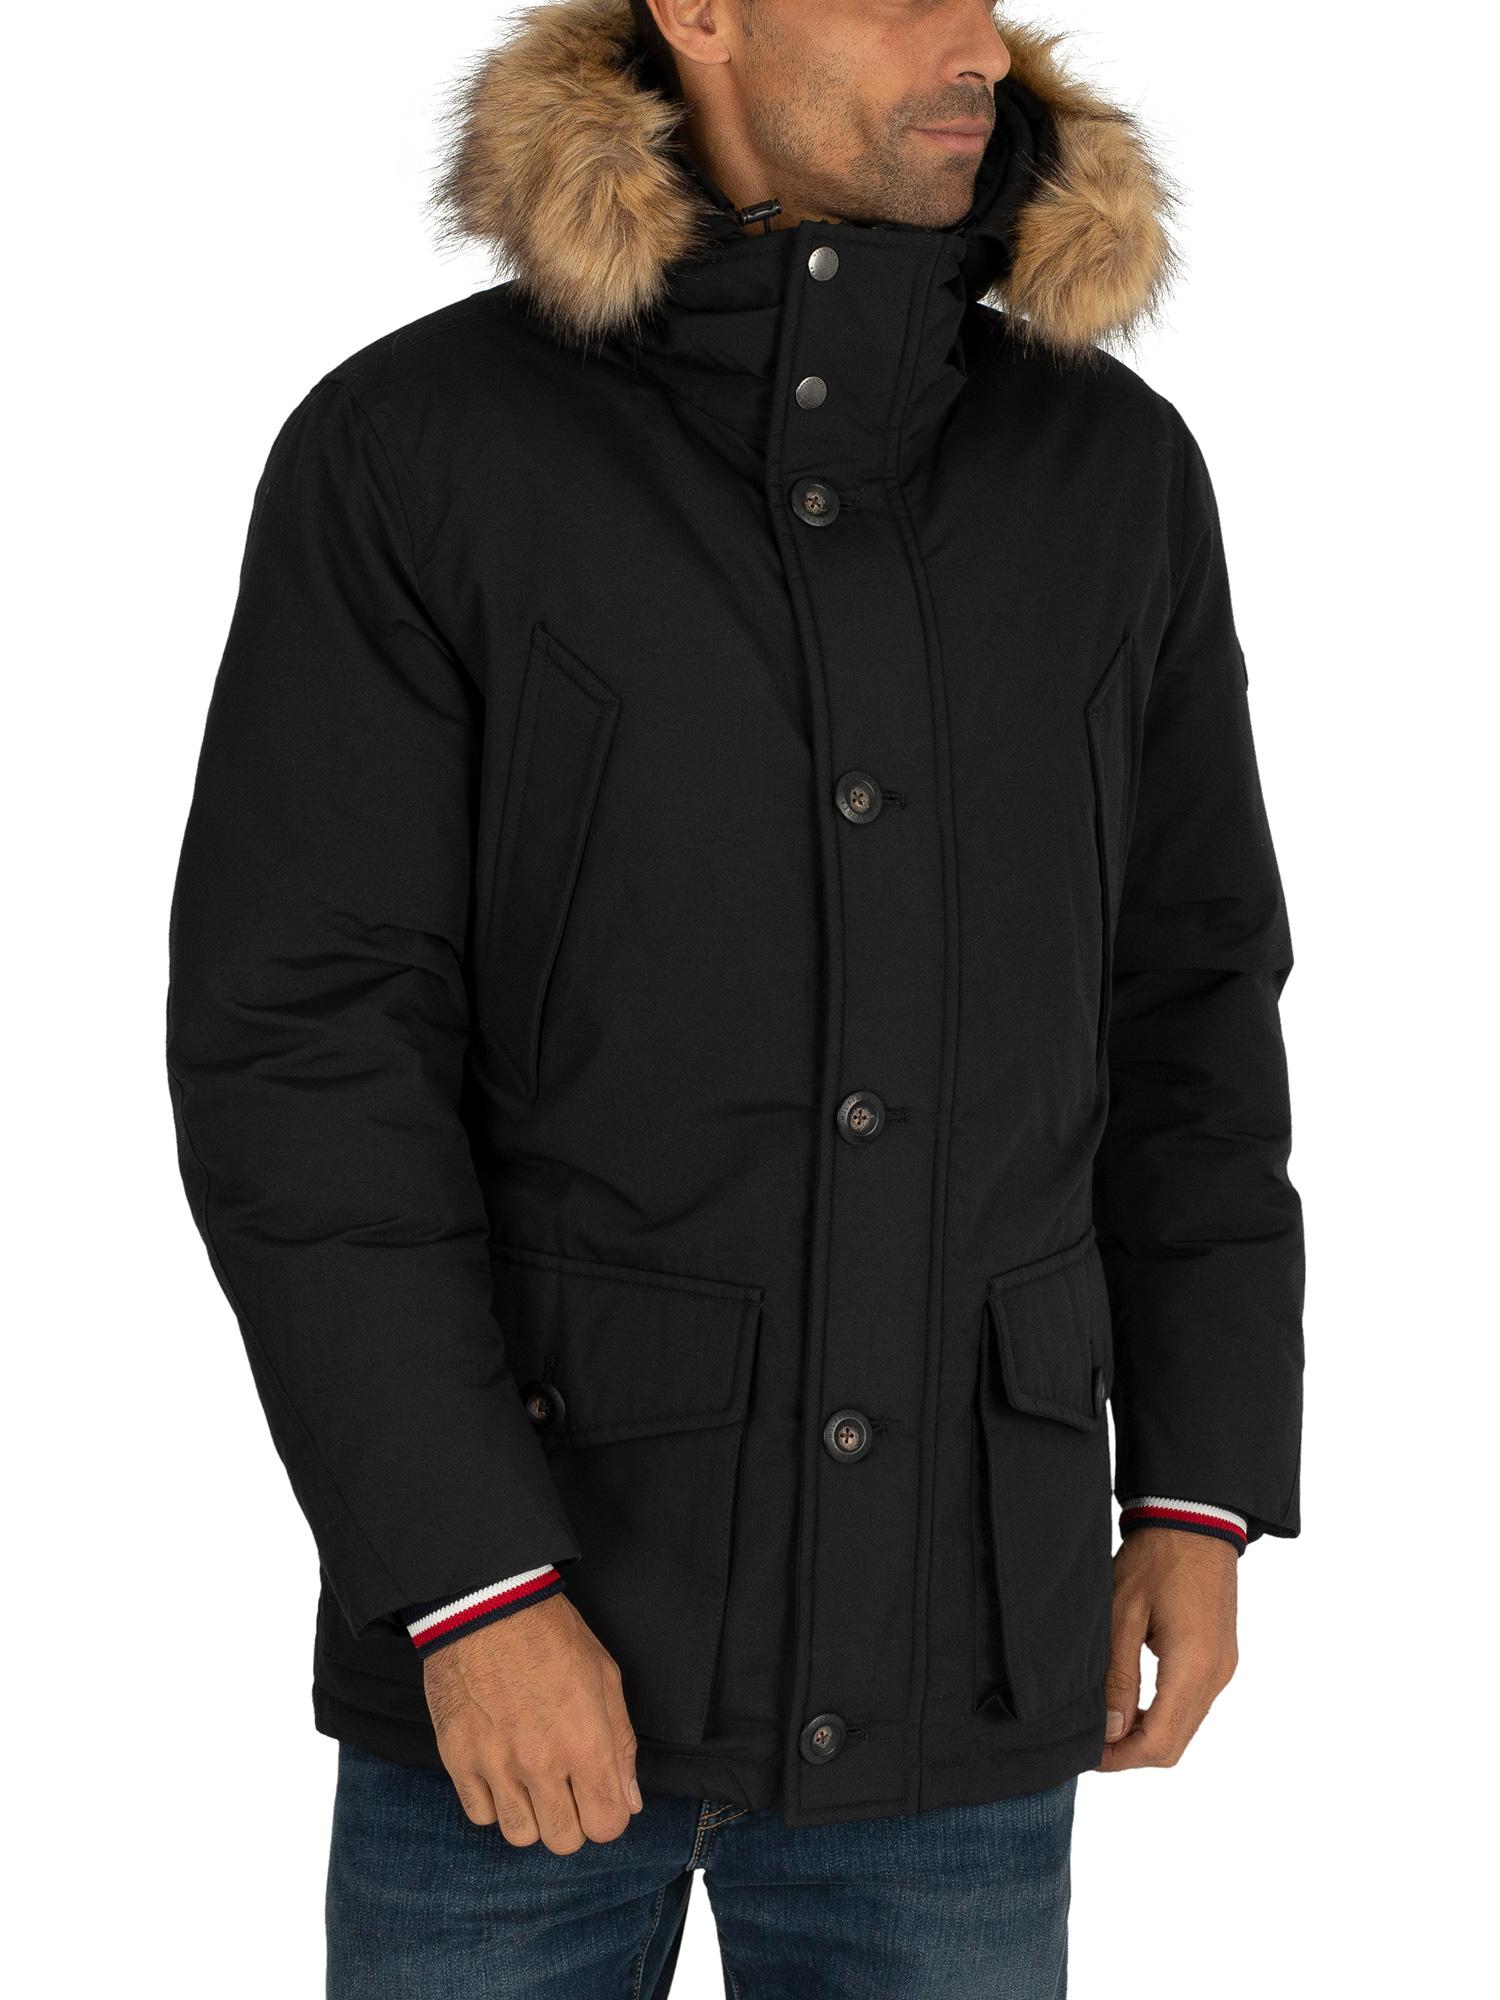 Tommy Hilfiger Fur Hampton Down Parka Jacket in Black for Men - Lyst